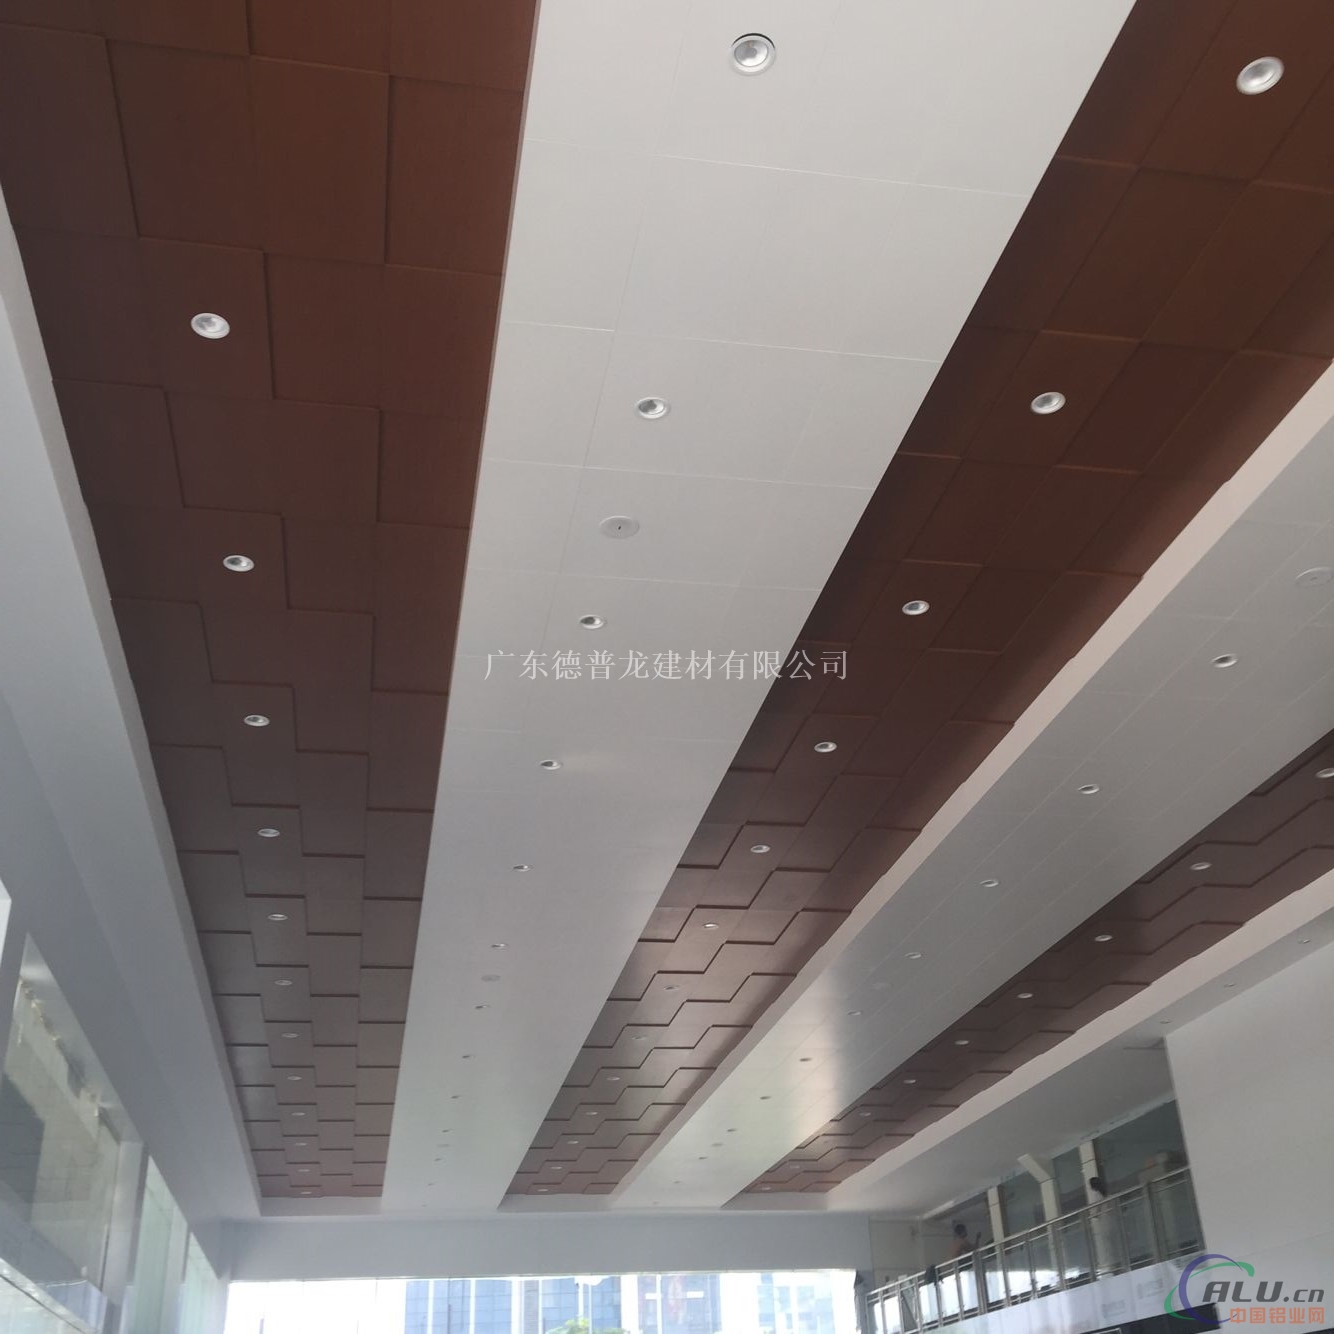 广本4s店木纹铝单板吊顶 白色勾搭铝单板